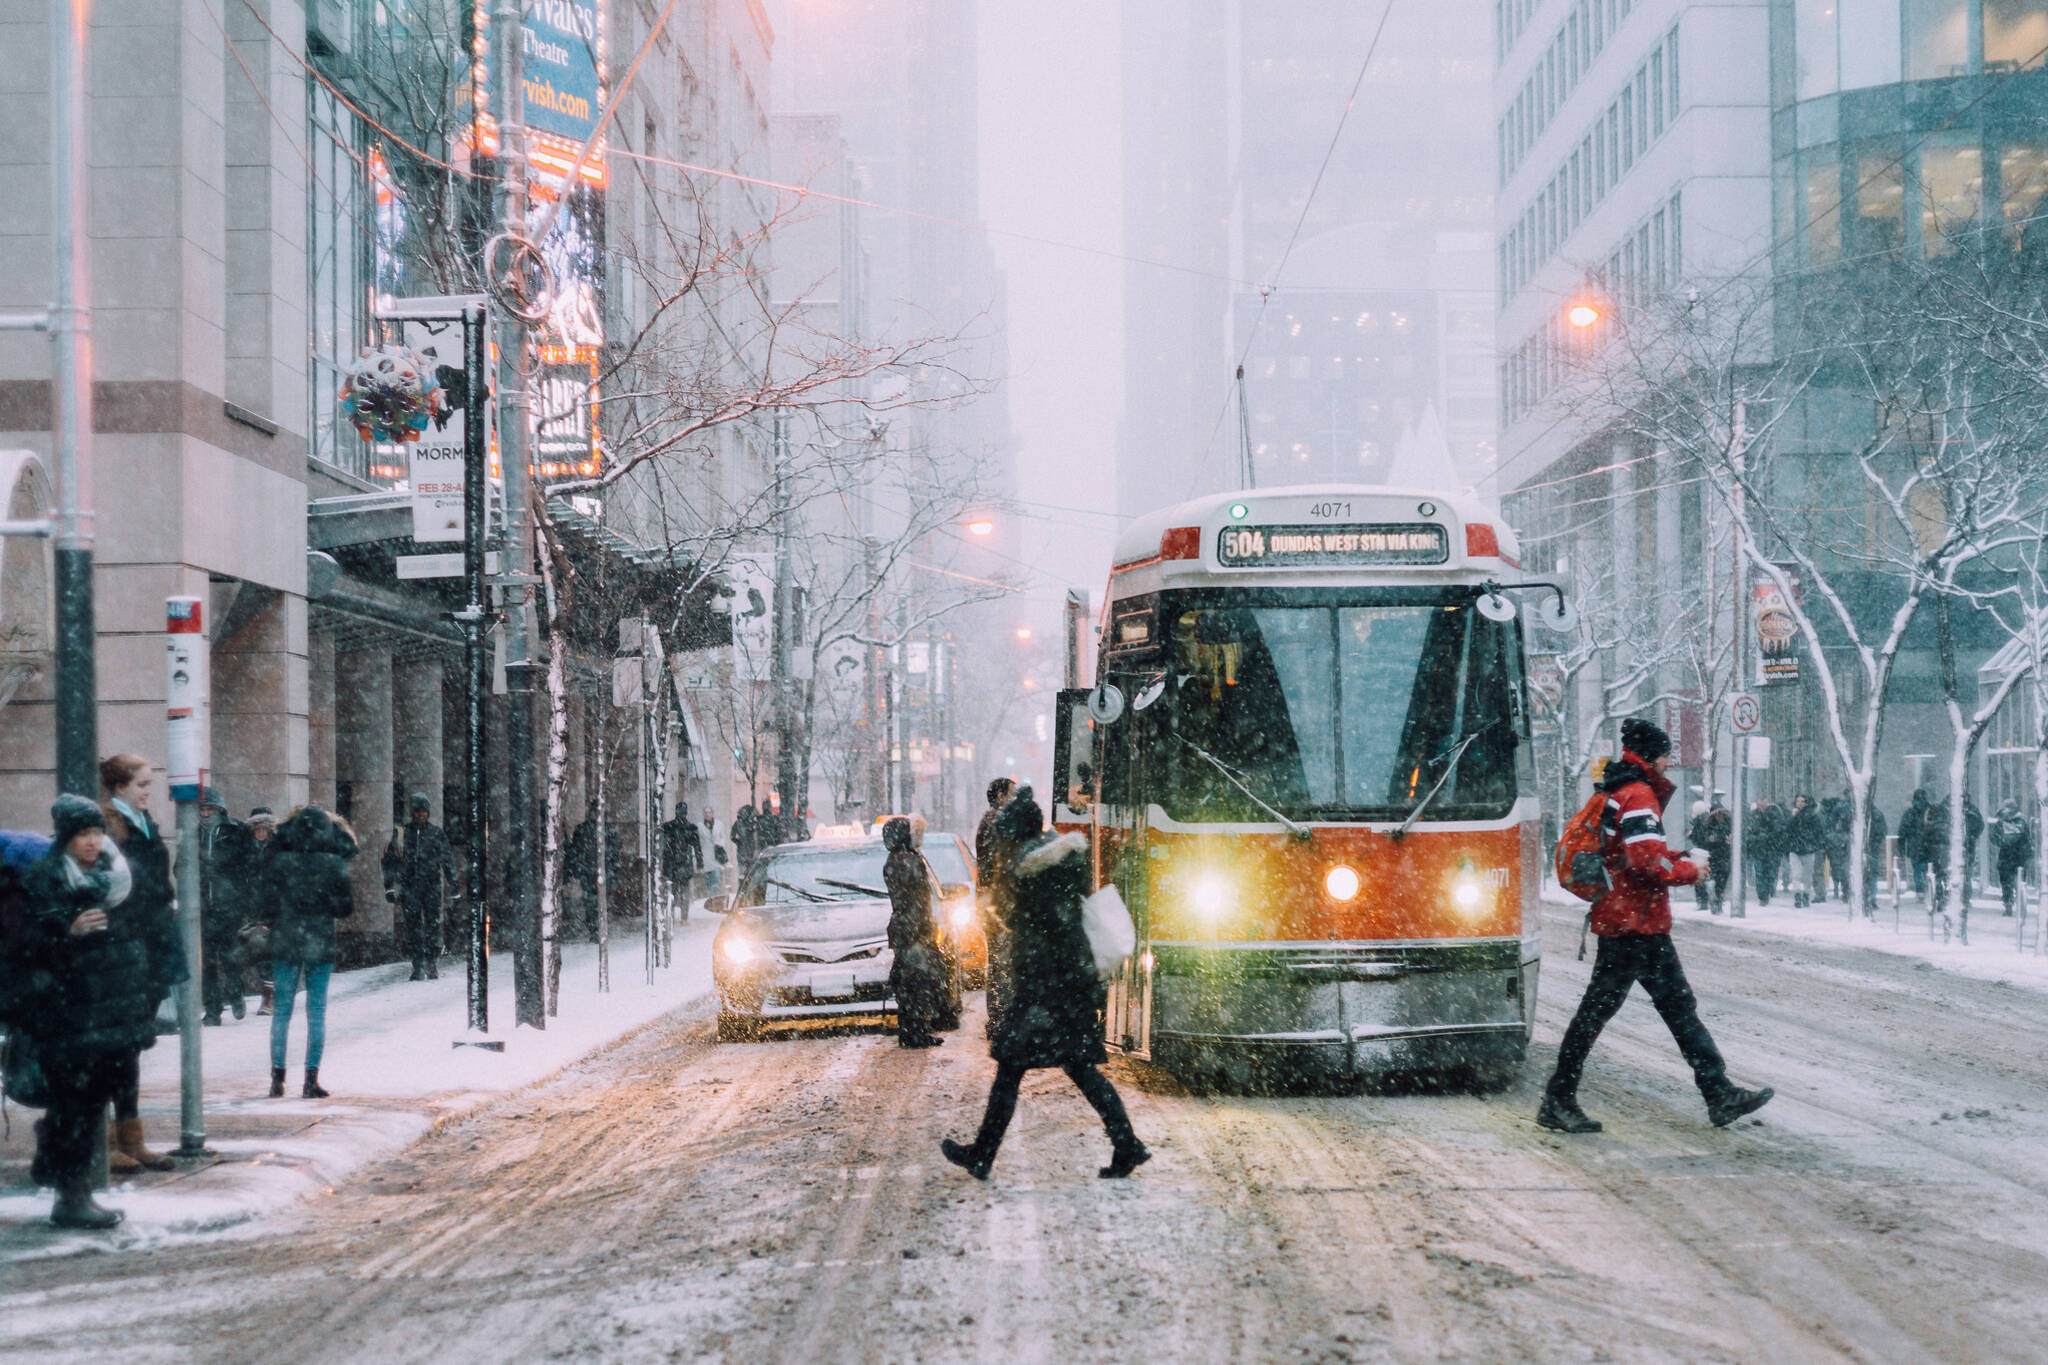 Toronto might get a big snow storm next week